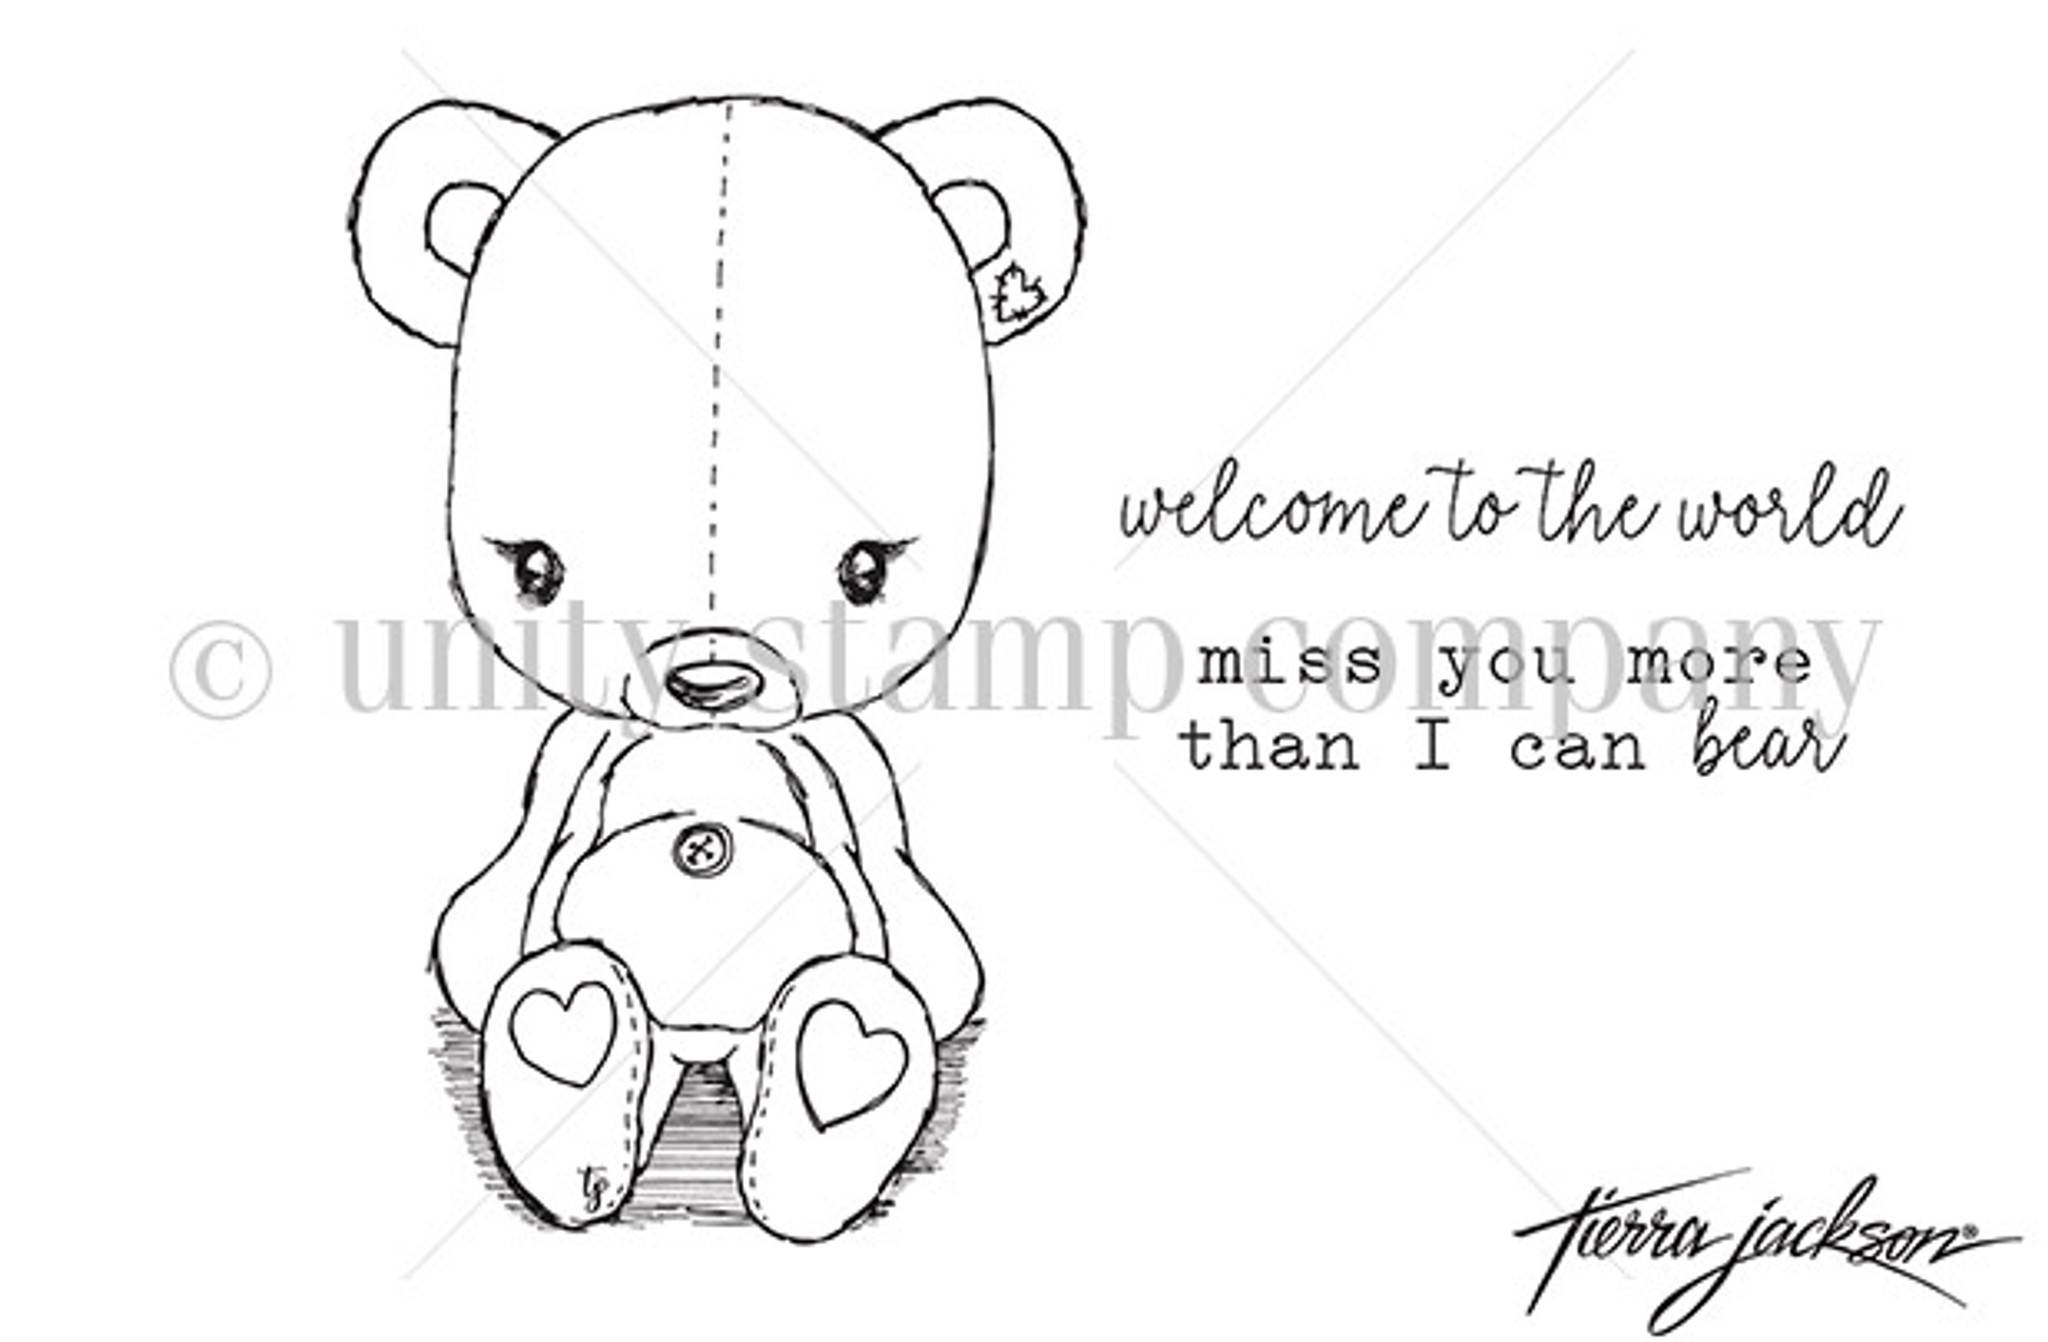 Cuddlebug Teddy Bear Unity Stamp Company